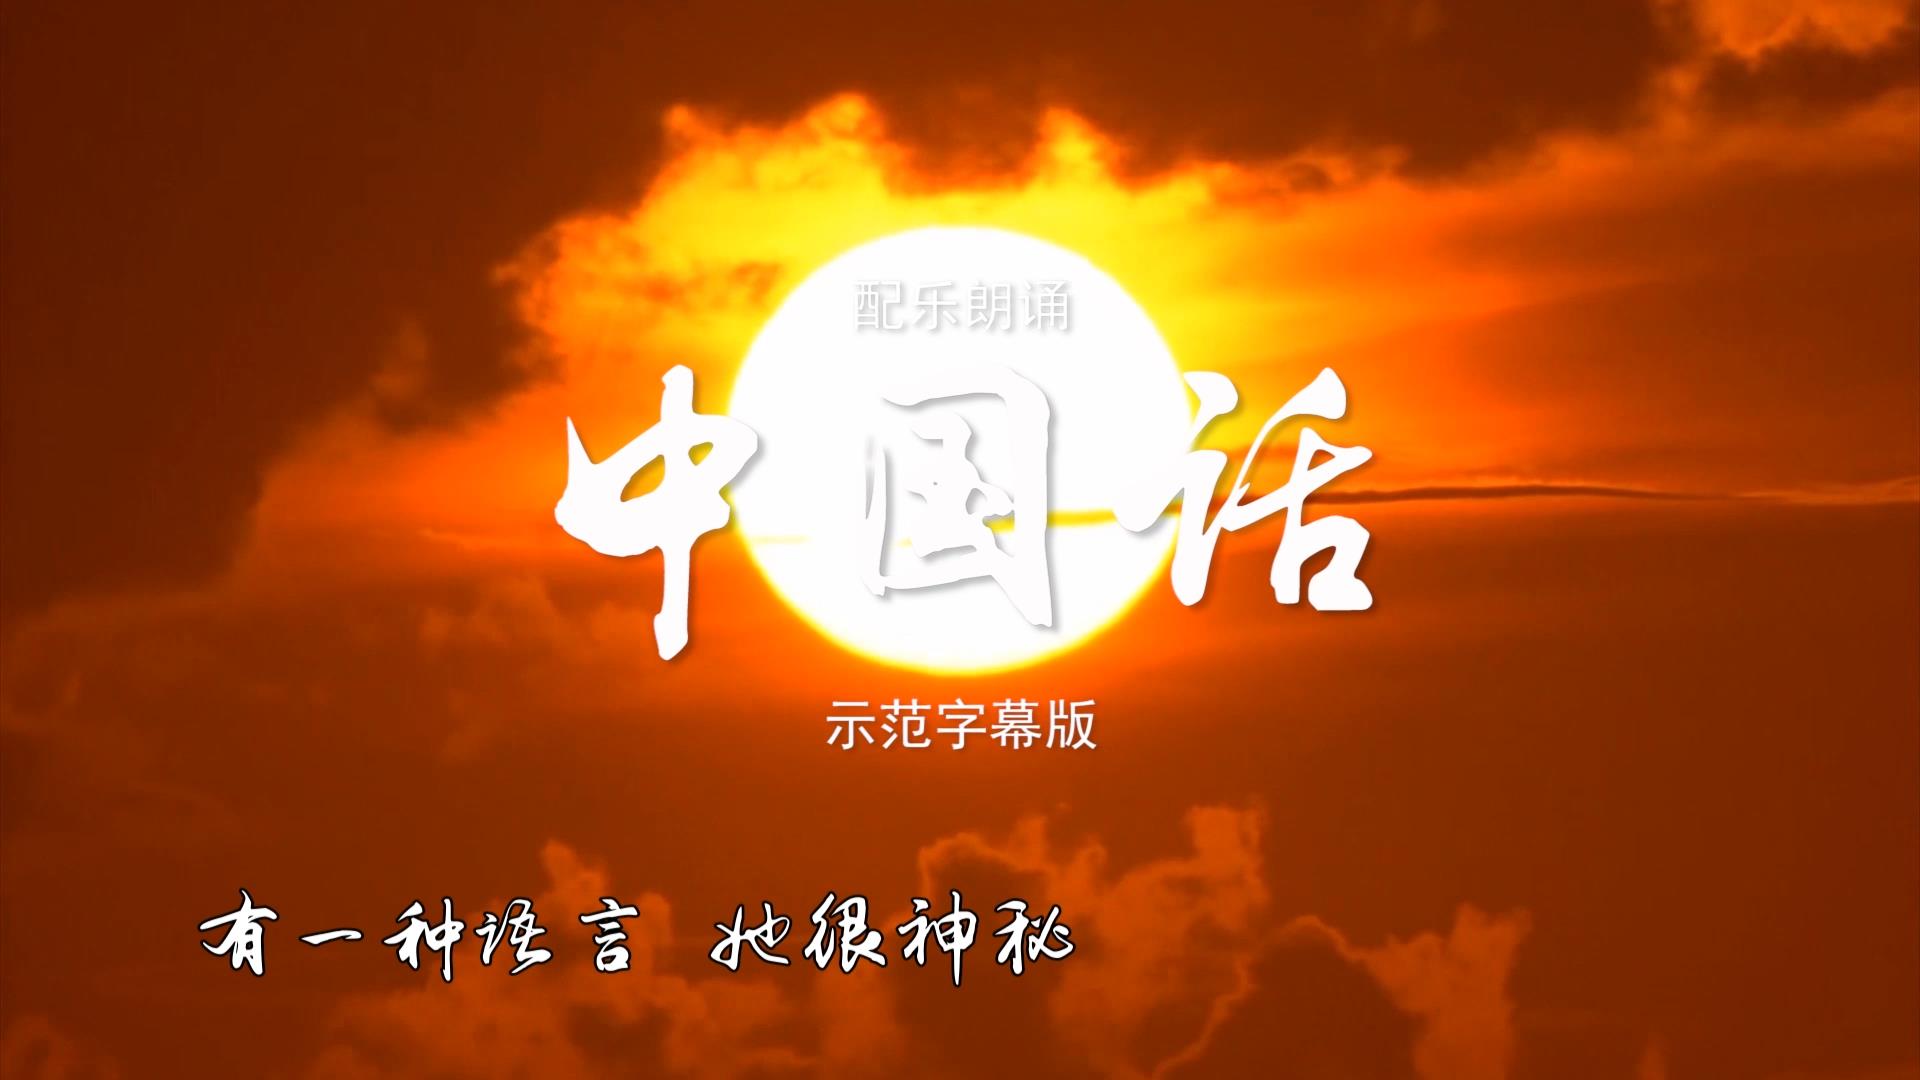 中国话单人版 诗歌朗诵配乐伴奏舞台演出LED背景大屏幕视频素材TV